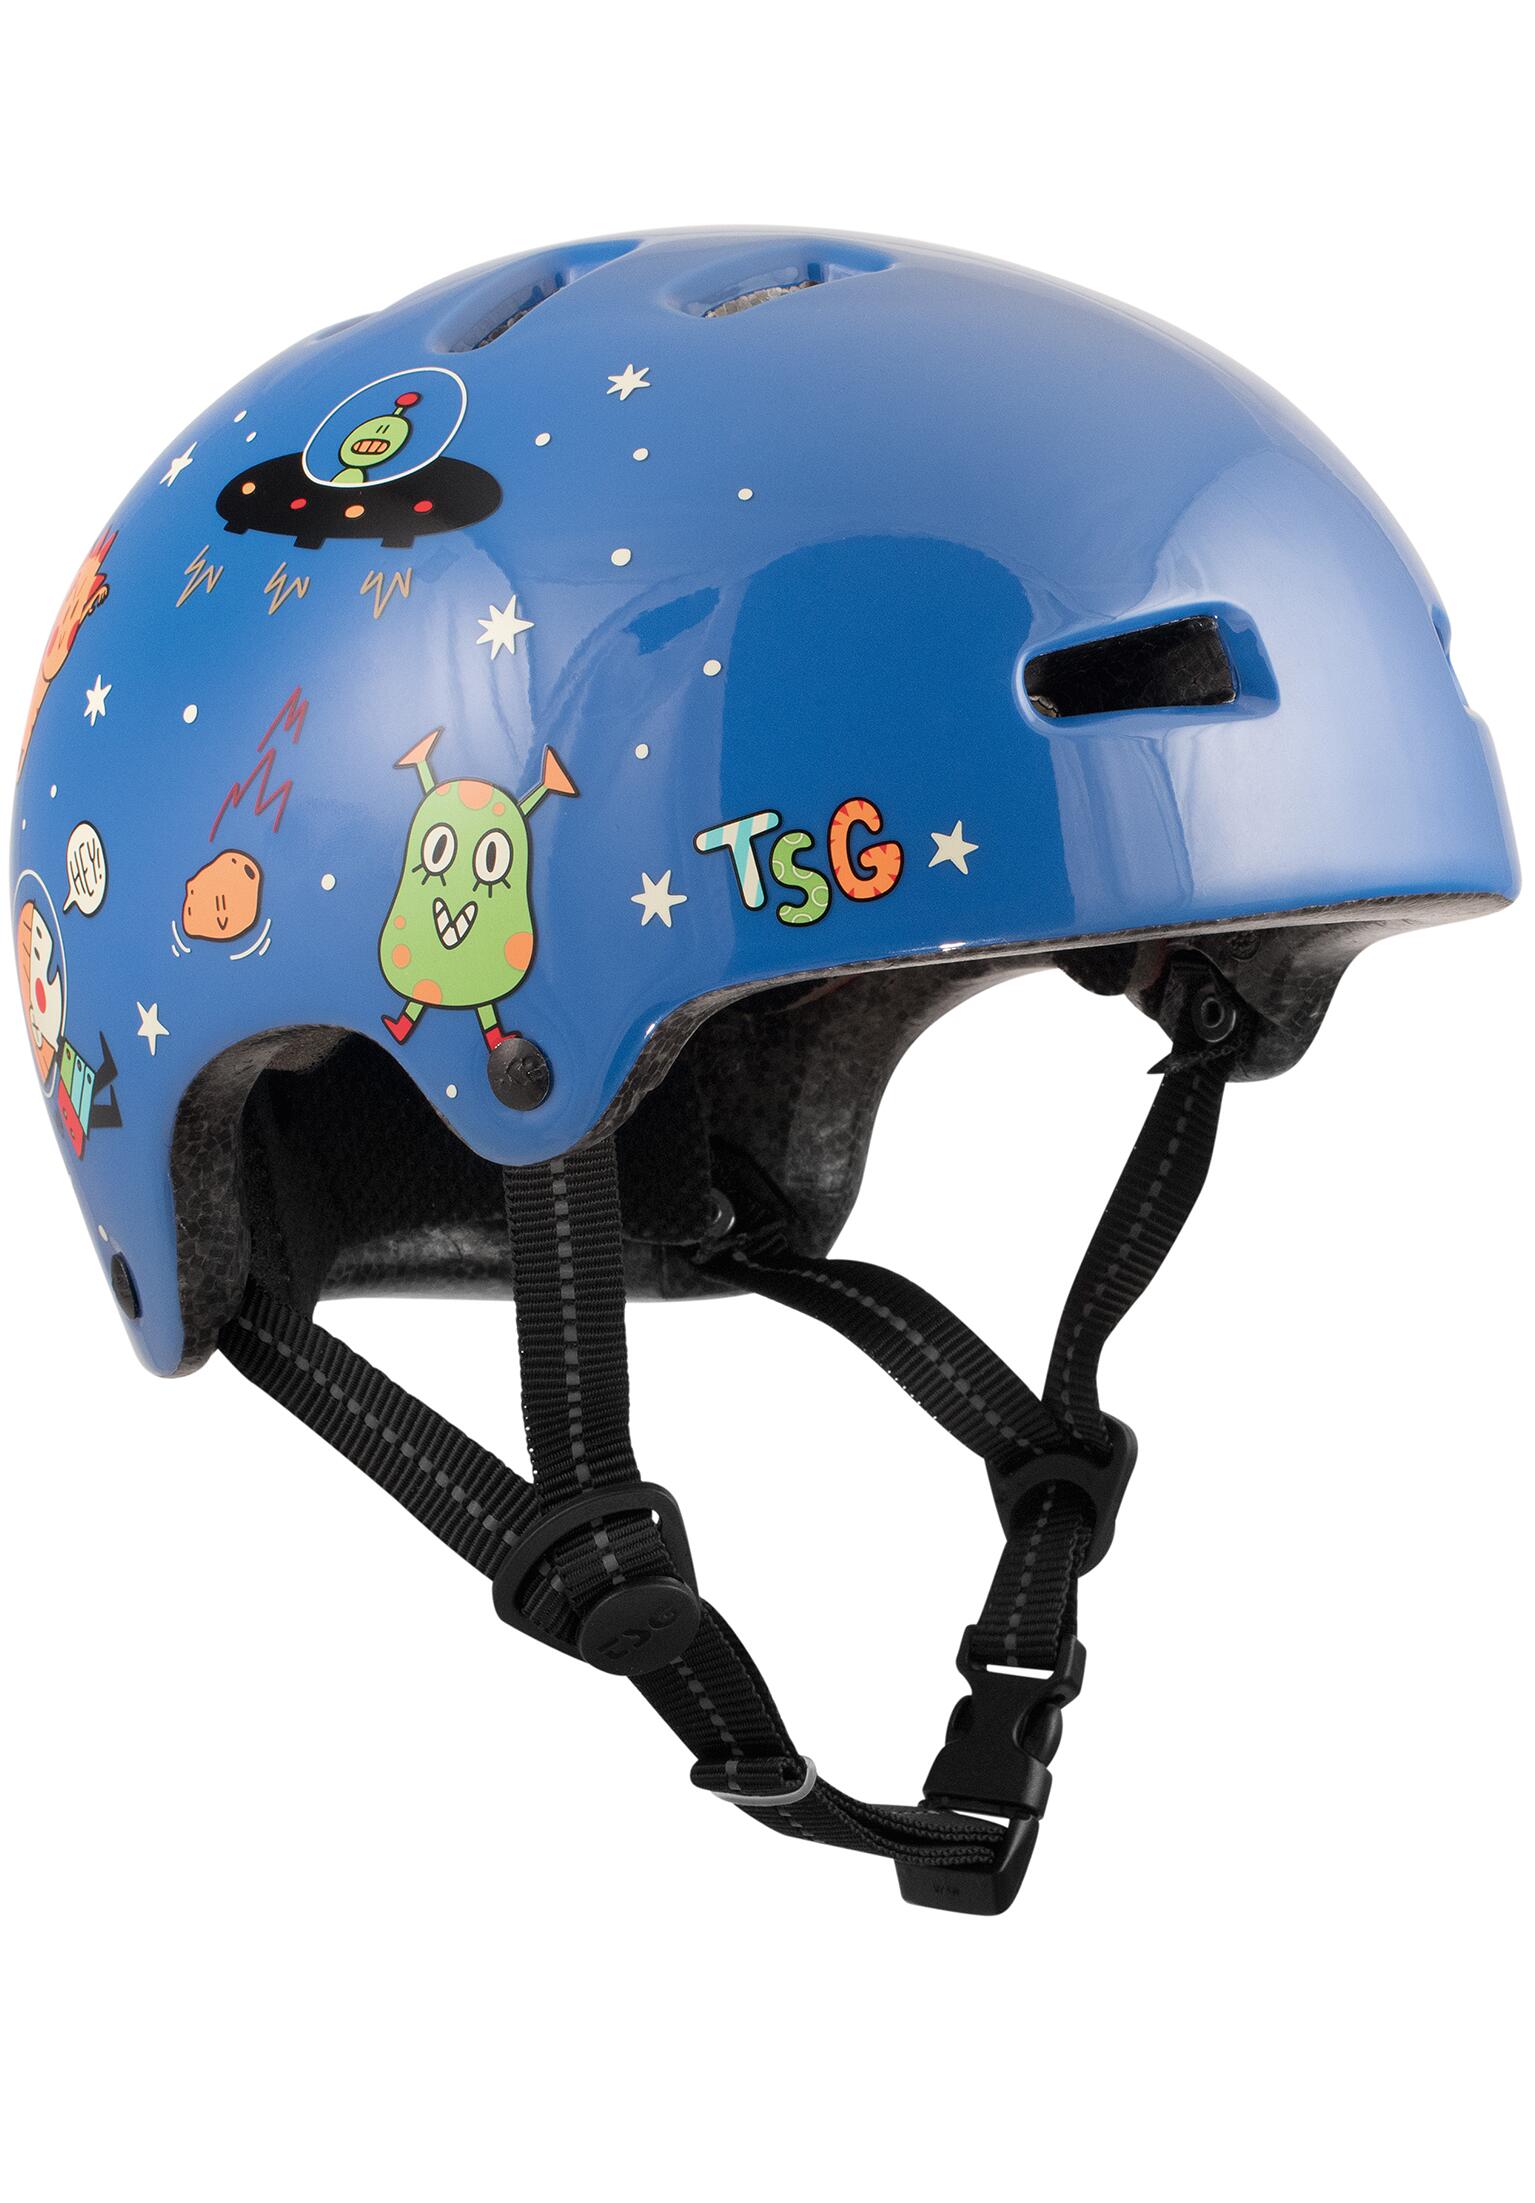 TSG Nipper Mini kinder skate helm space craze